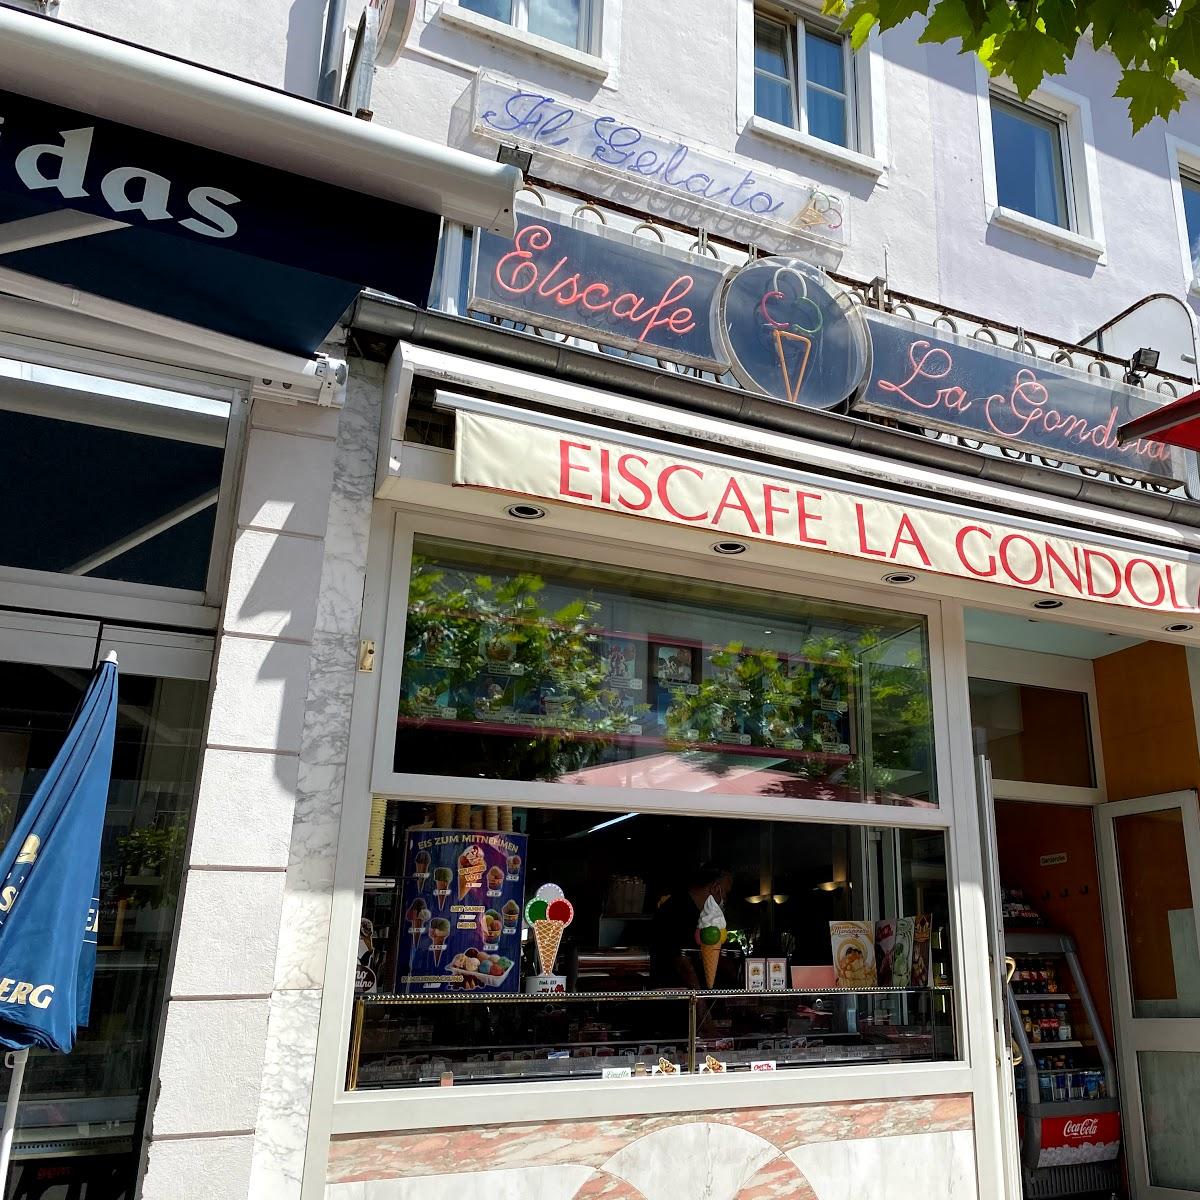 Restaurant "Eiscafe La Gondola" in Saarlouis